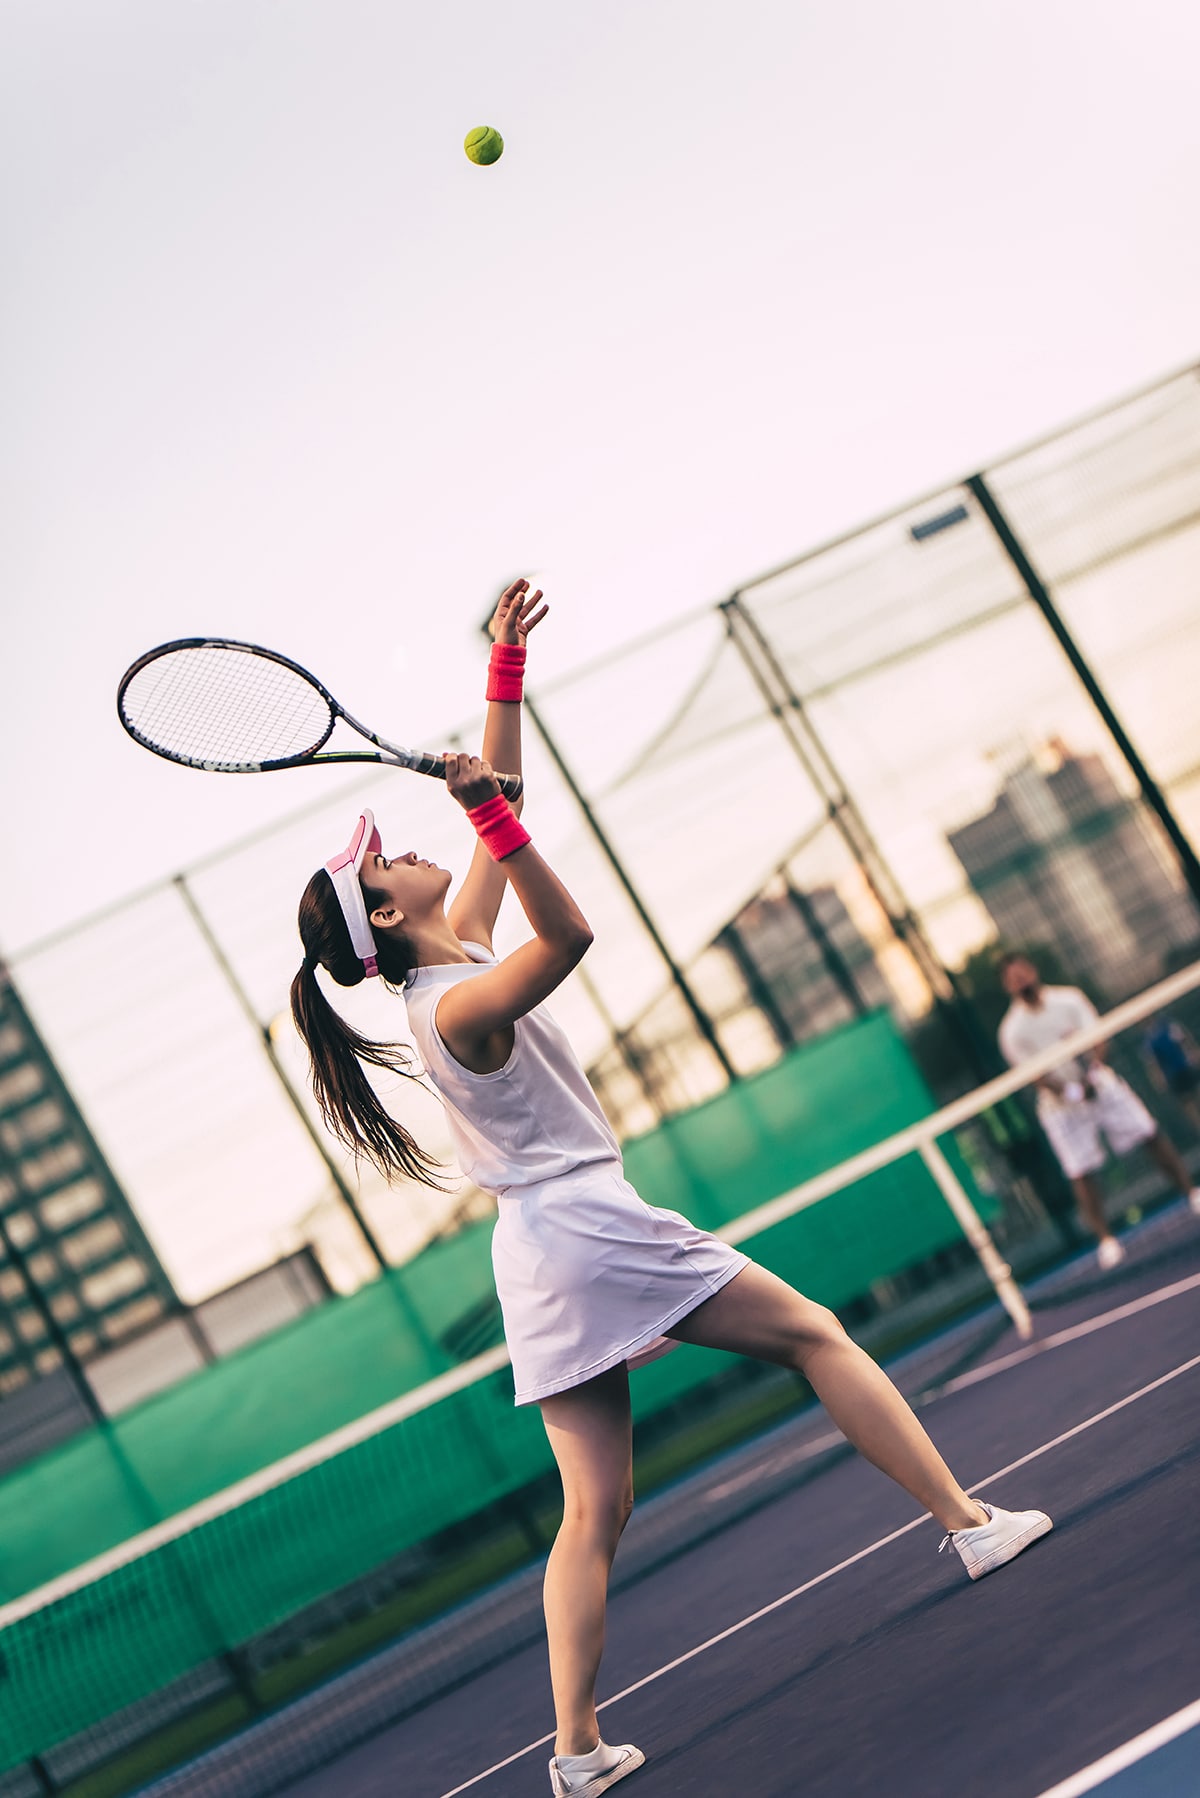 Entre saques e voleios, tênis é esporte para todas as idades